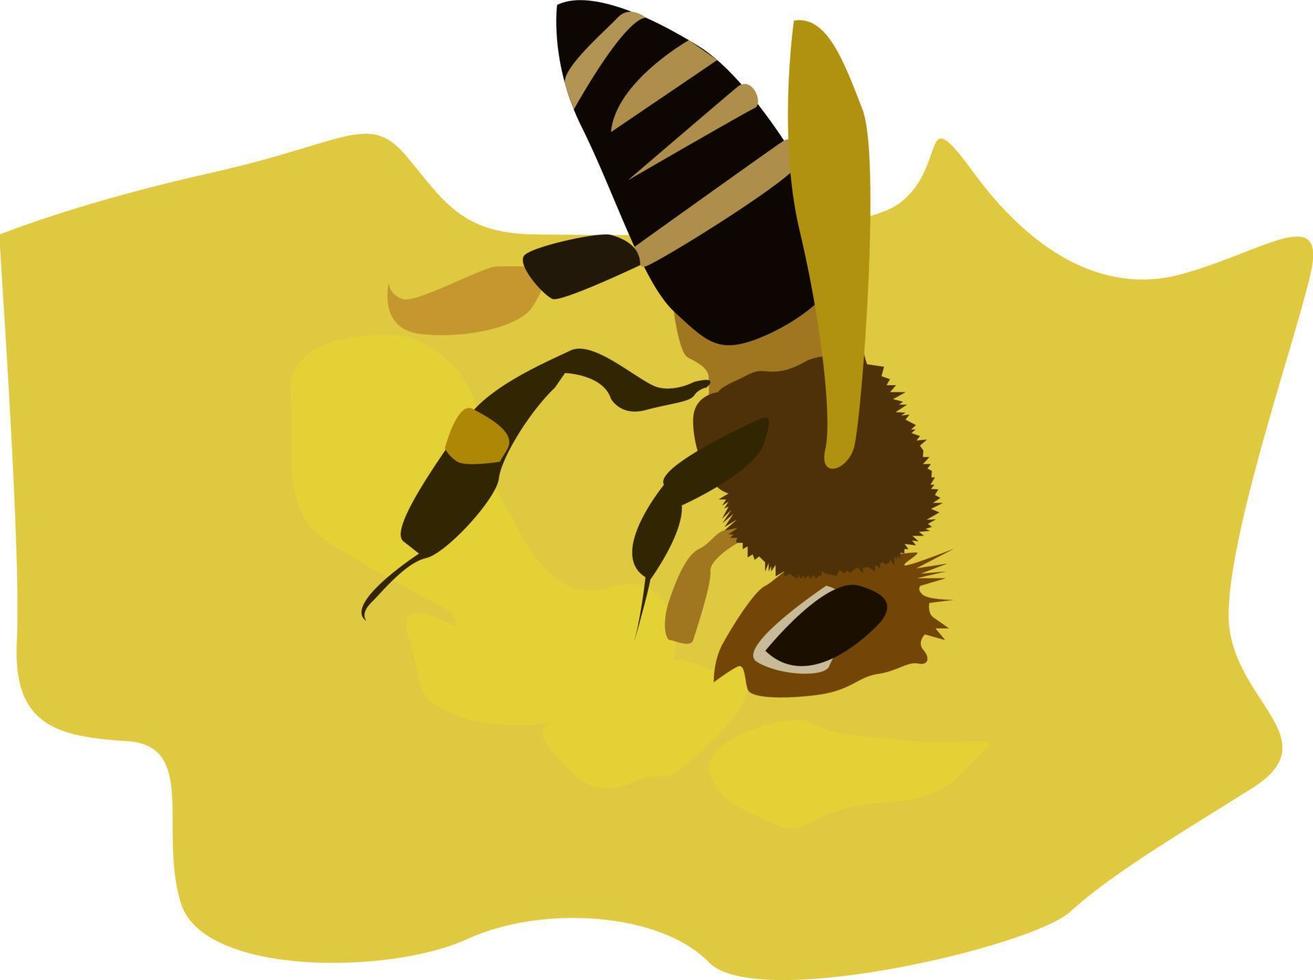 nectar d'abeilles, illustration, vecteur sur fond blanc.